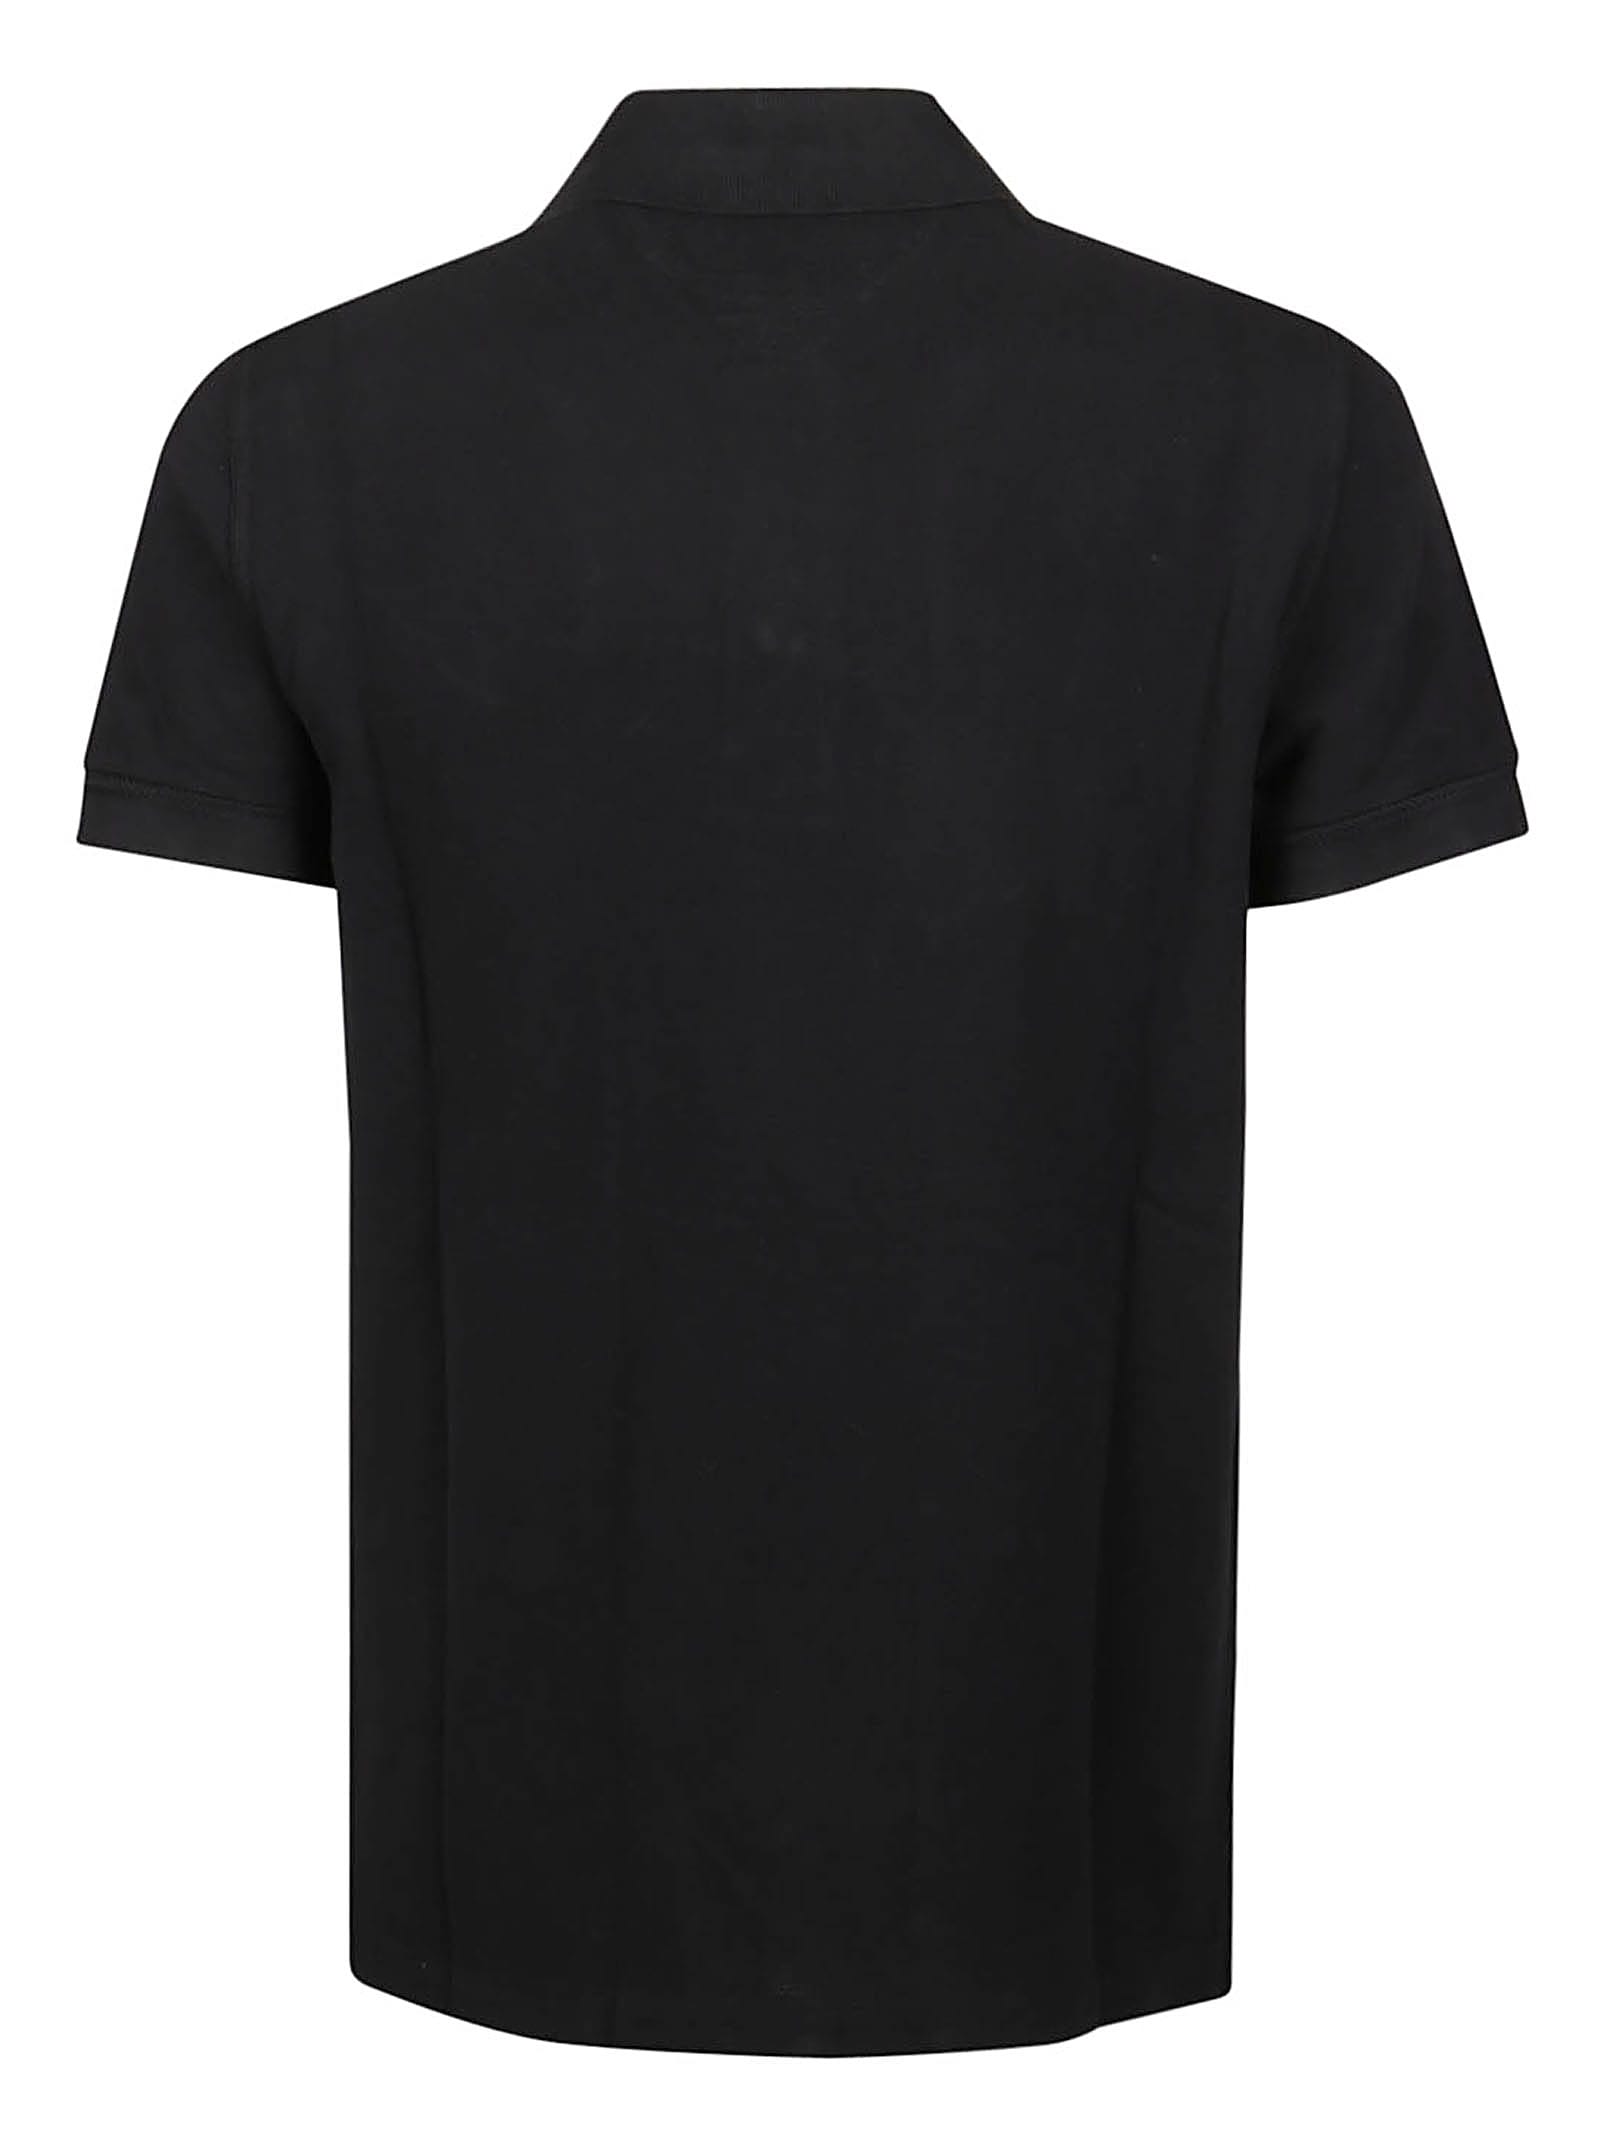 Shop Tom Ford Tennis Piquet Short Sleeve Polo Shirt In Black